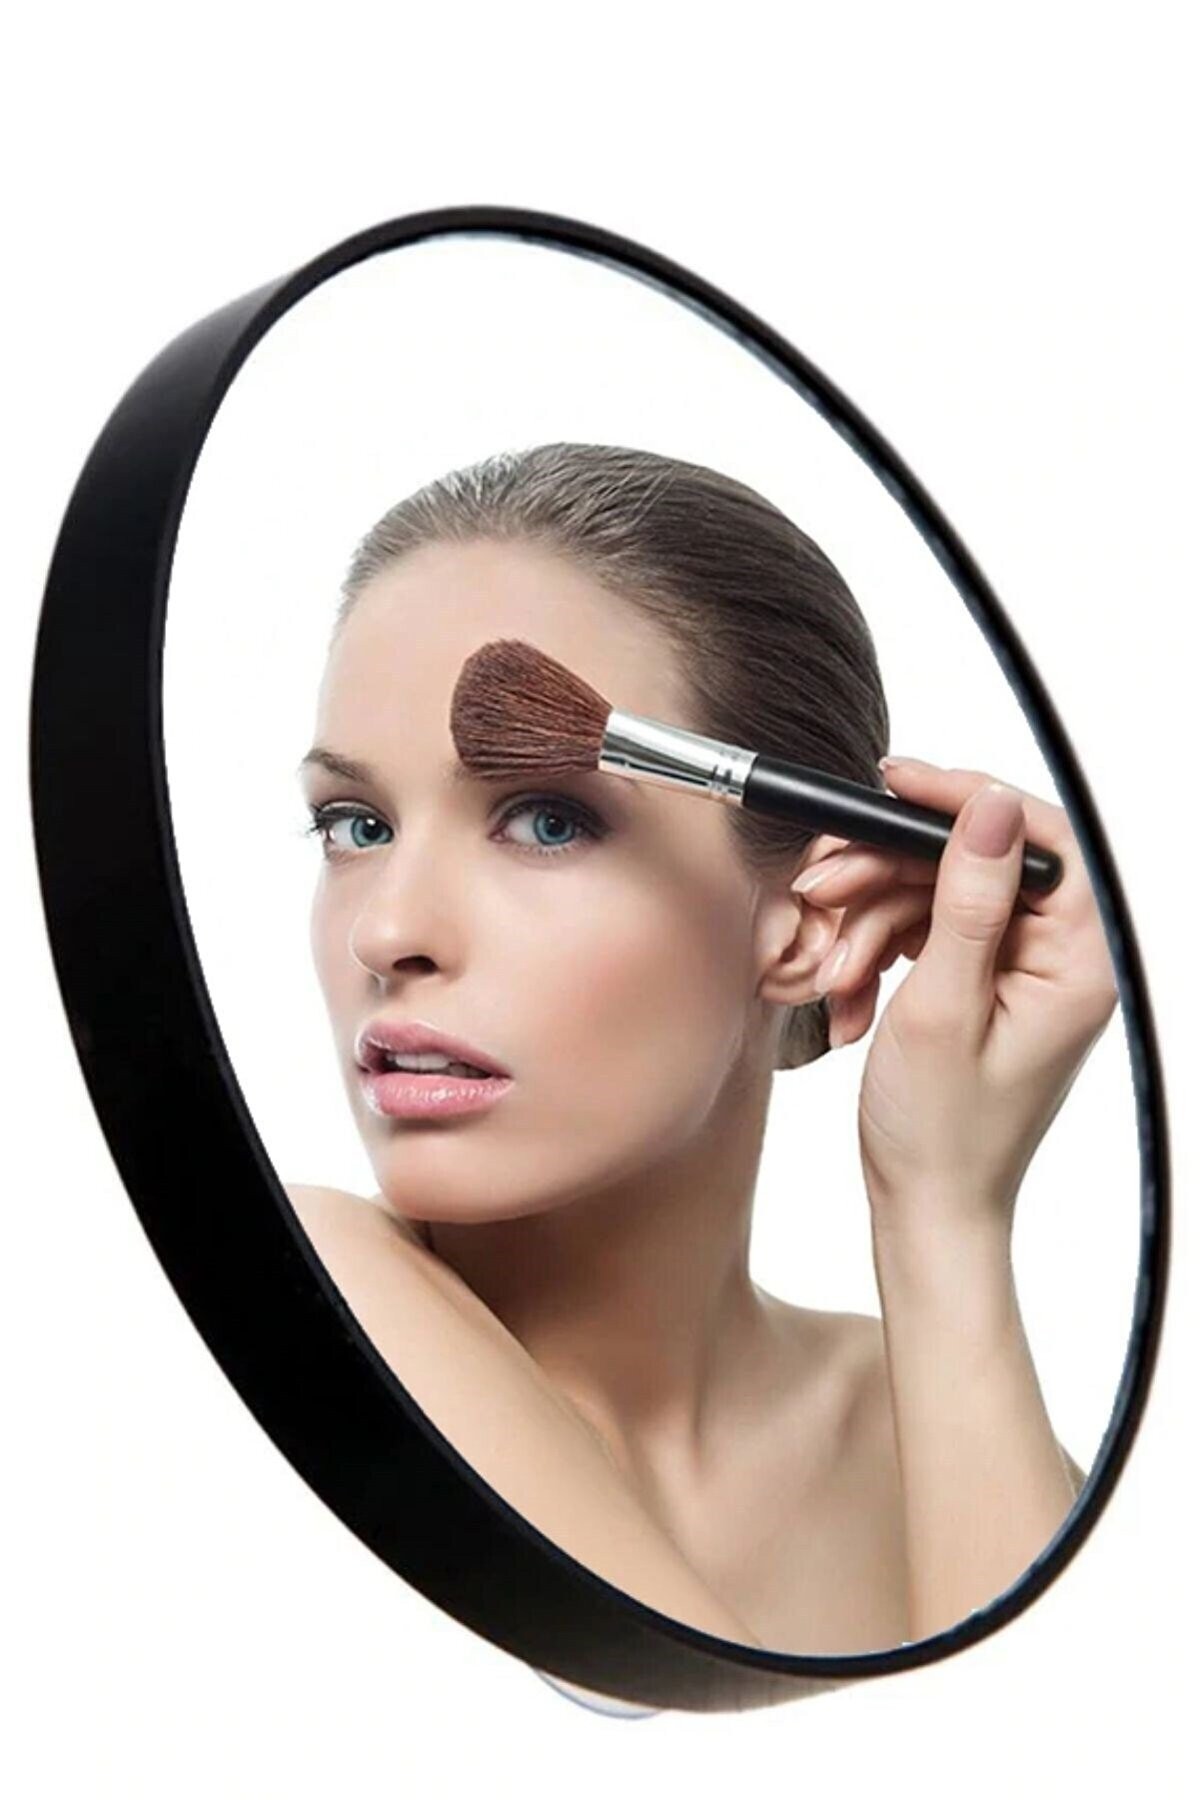 Büyüteçli Vantuzlu Ayna 5X Büyüteç Makyaj Aynası, Sabitlenebilir, Pratik Kullanışlı 14cm